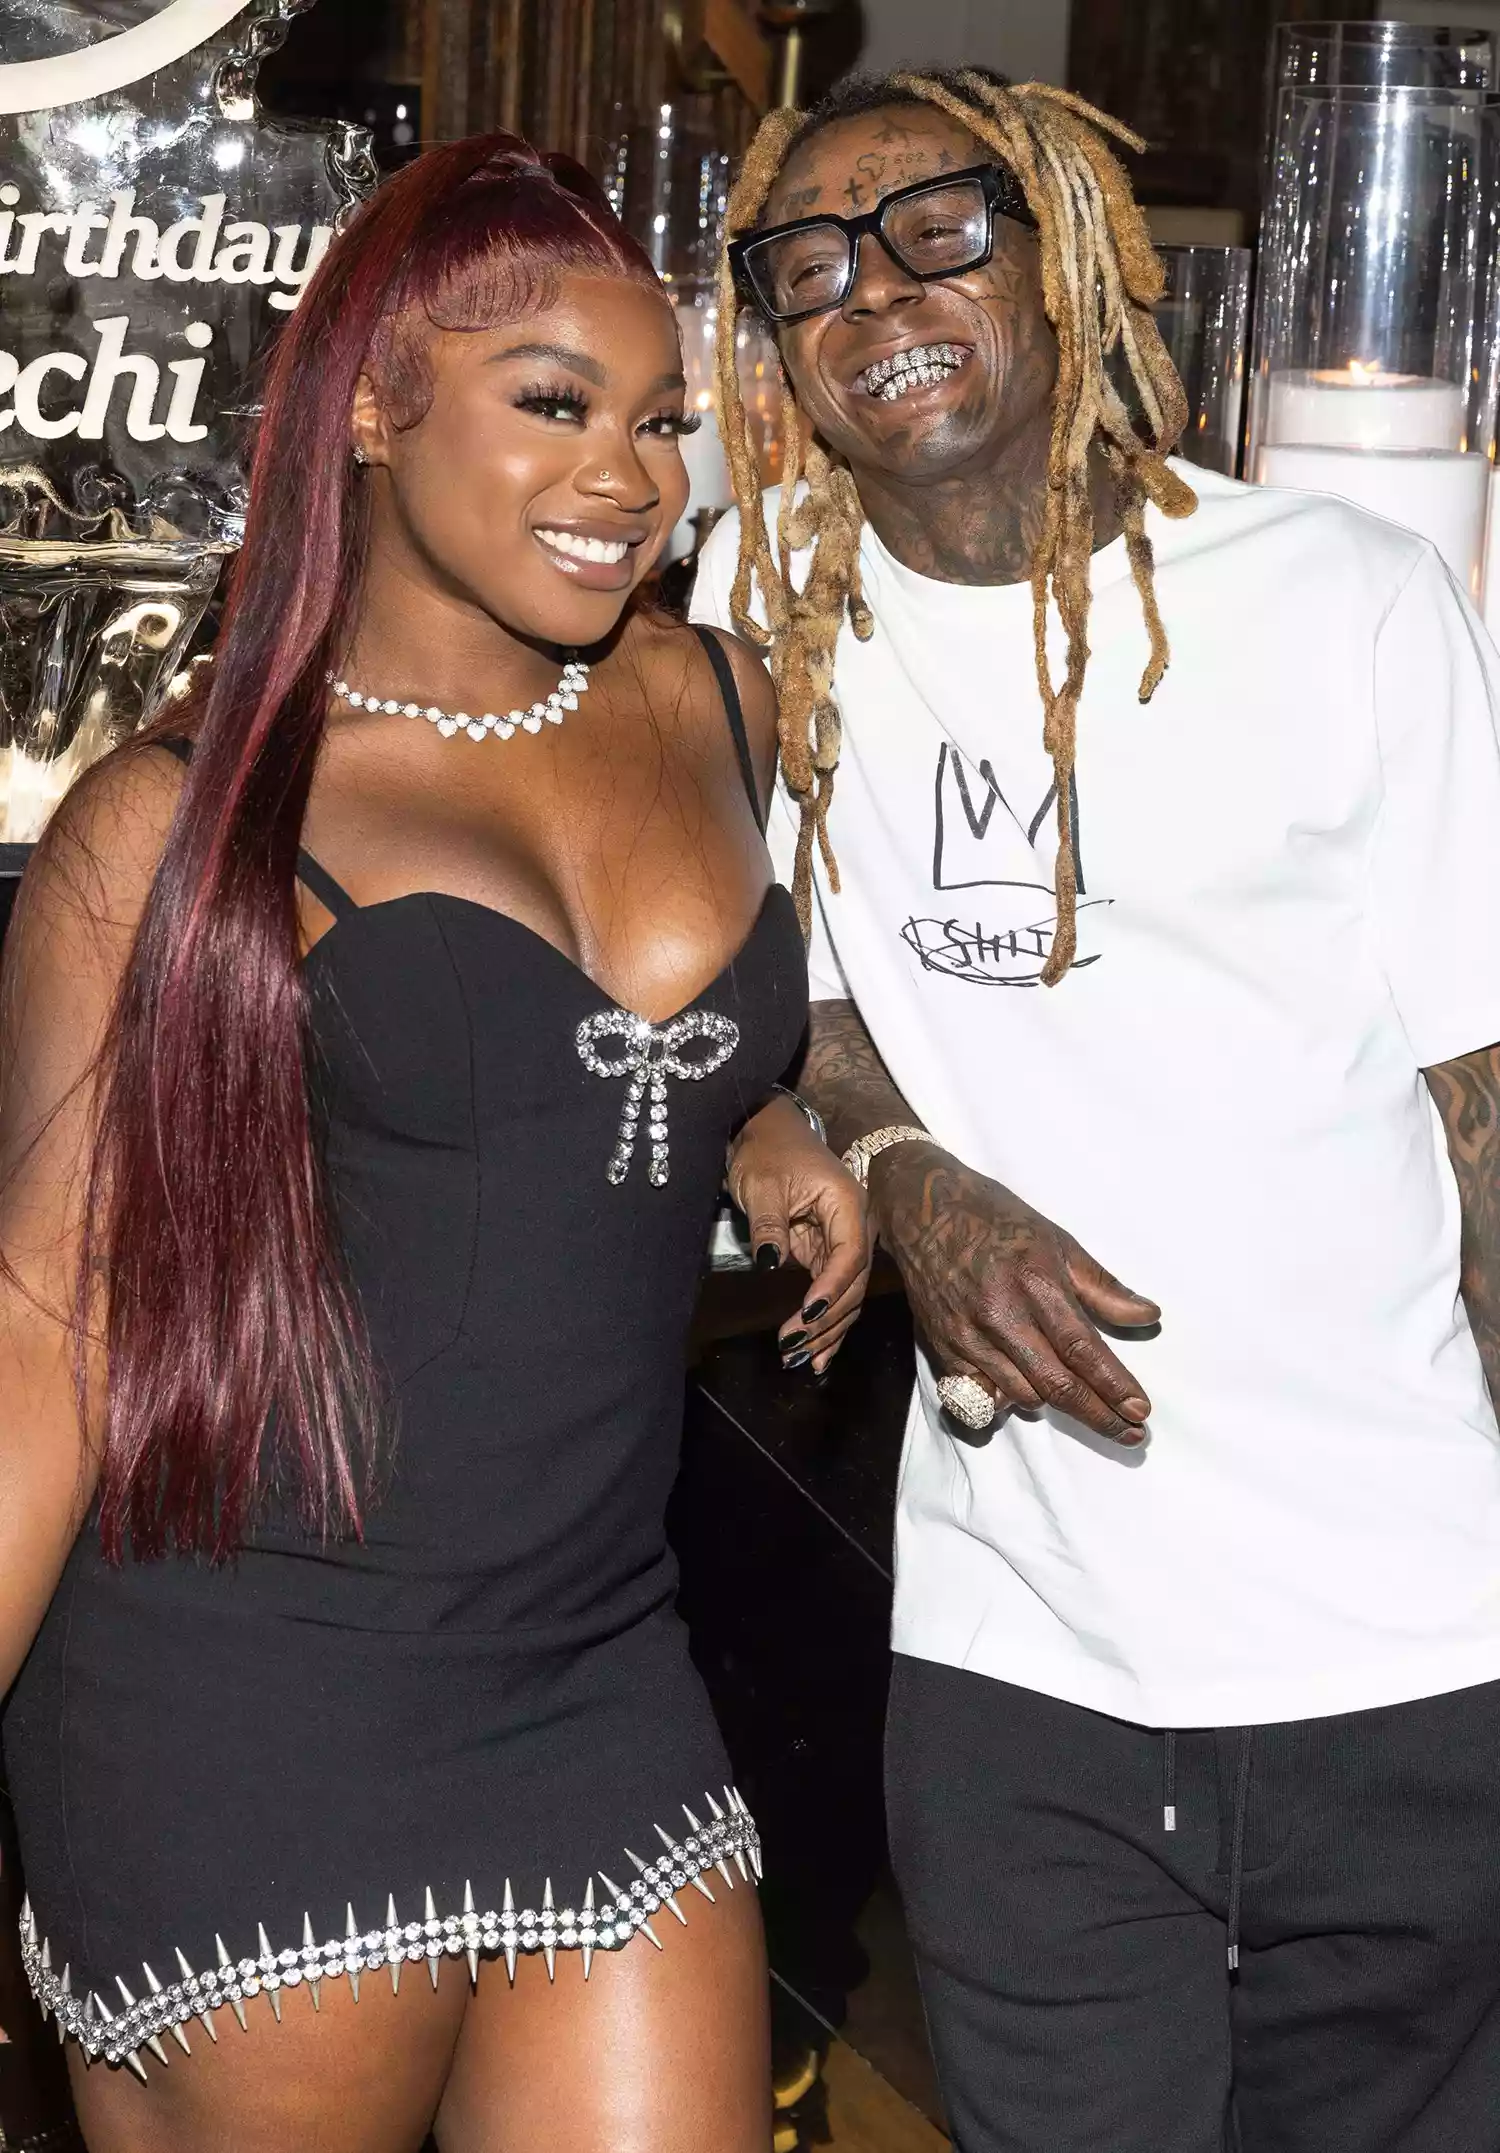 Lil Wayne and daughter